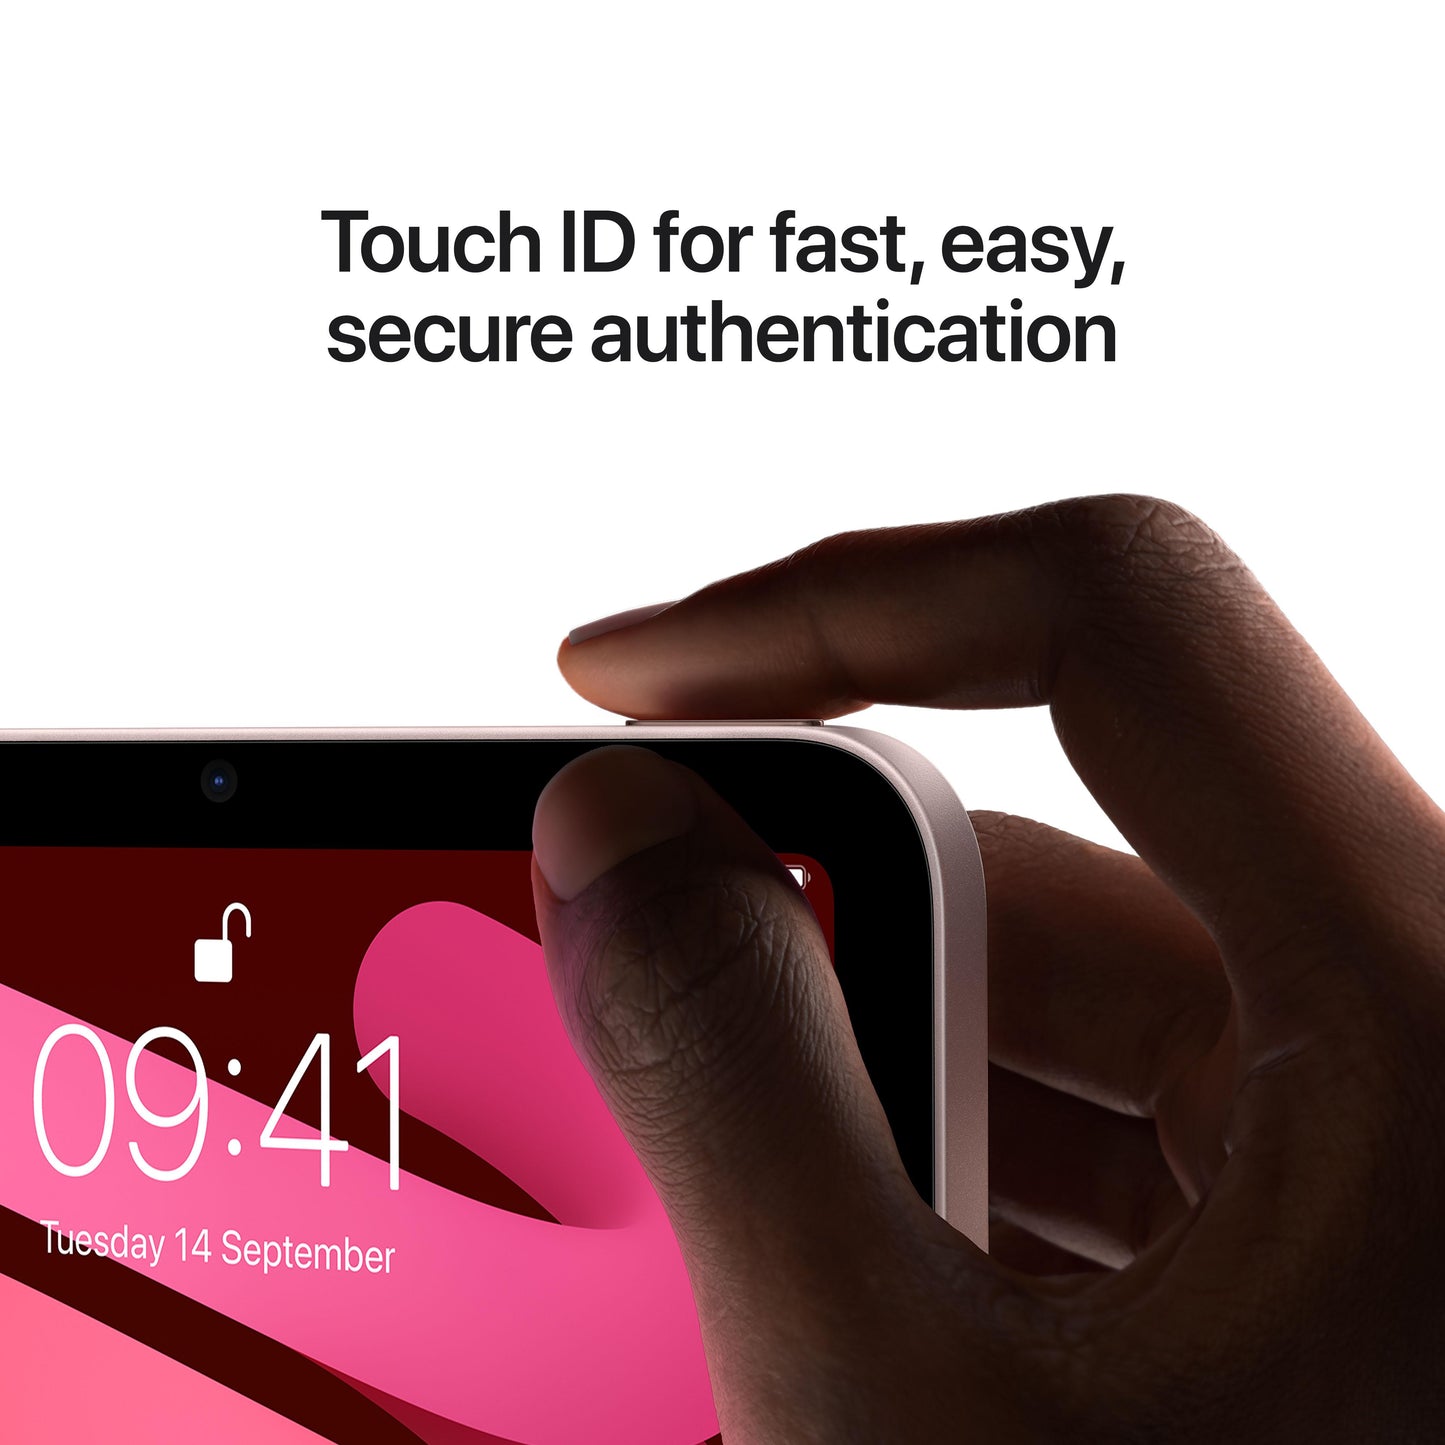 iPad mini Wi-Fi + Cellular 256GB - Pink (6th generation)